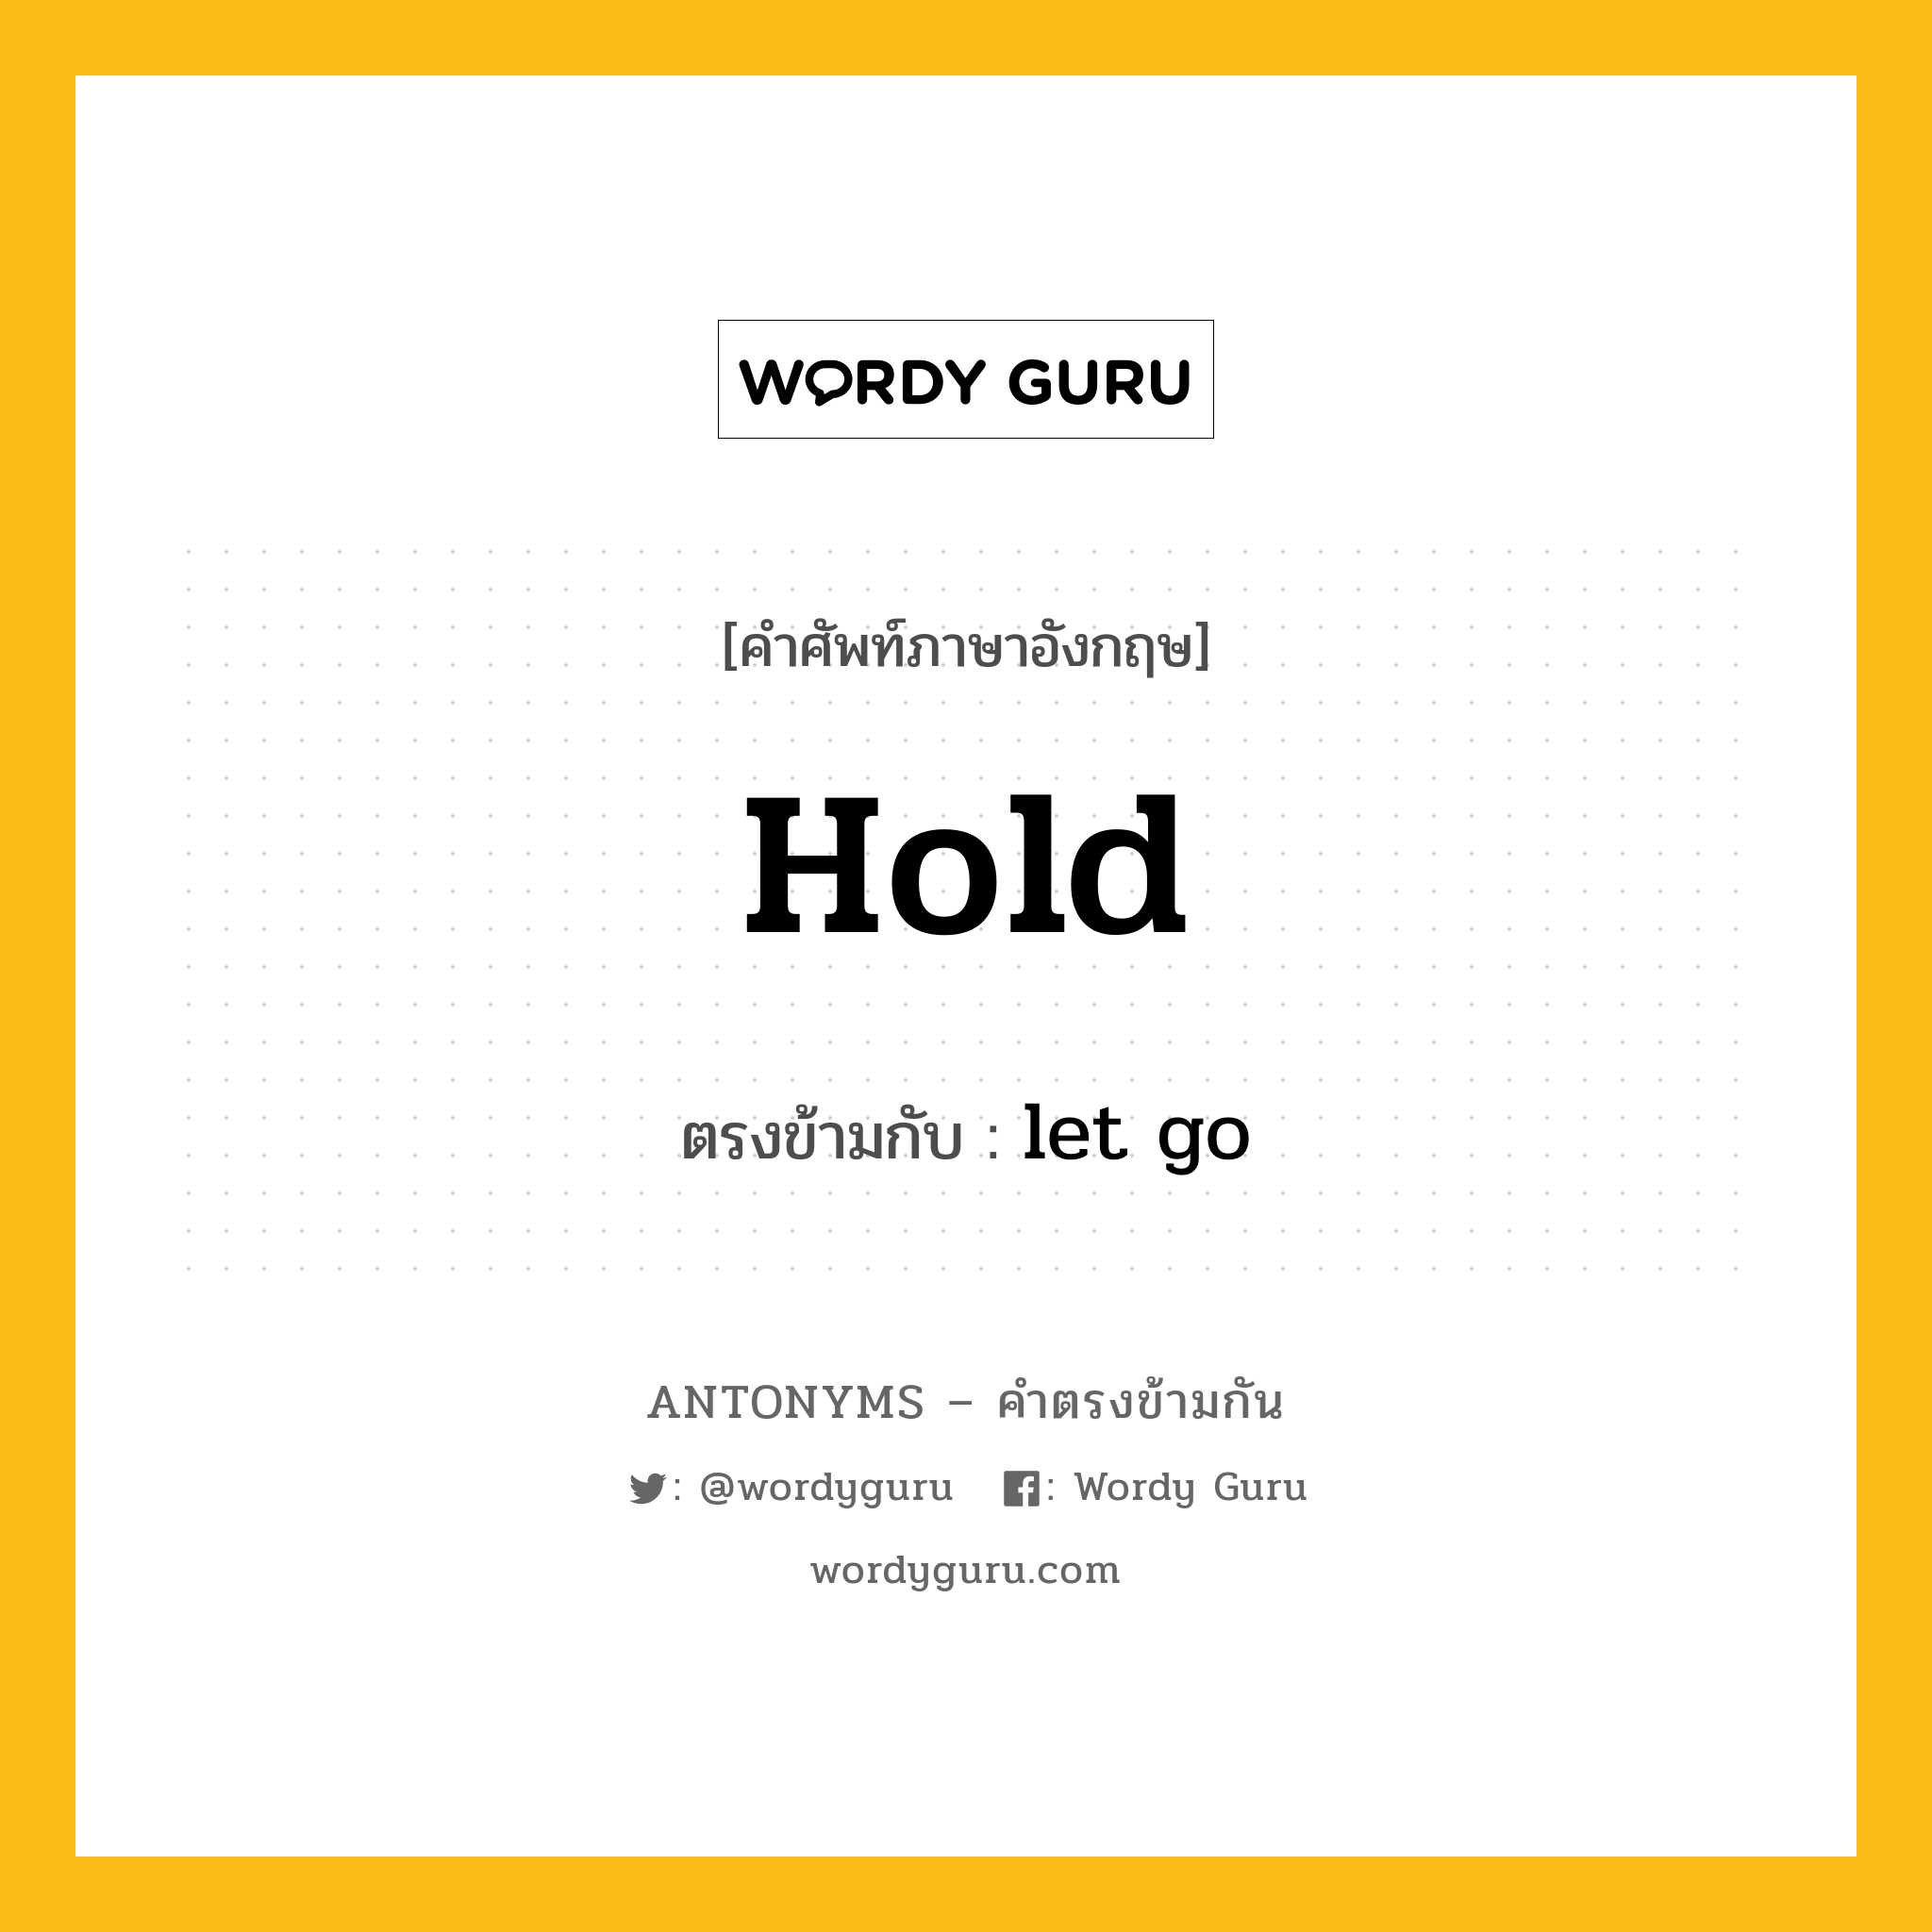 hold เป็นคำตรงข้ามกับคำไหนบ้าง? เป็นหนึ่งในคำตรงข้ามของ let go, คำศัพท์ภาษาอังกฤษ hold ตรงข้ามกับ let go หมวด let go